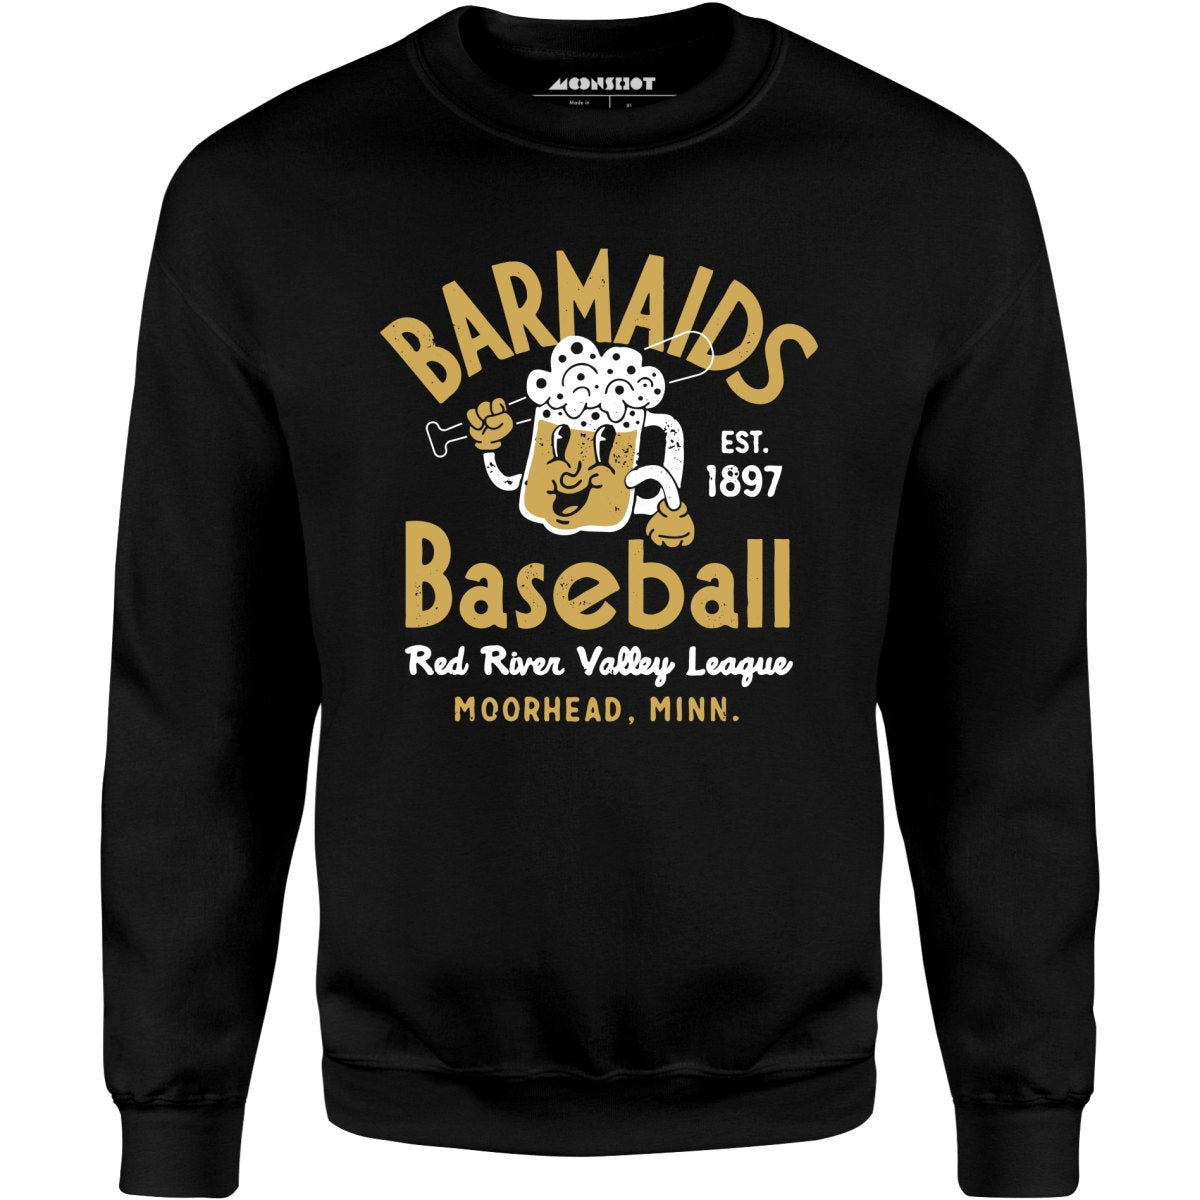 Moorhead Barmaids - Minnesota - Vintage Defunct Baseball Teams - Unisex Sweatshirt